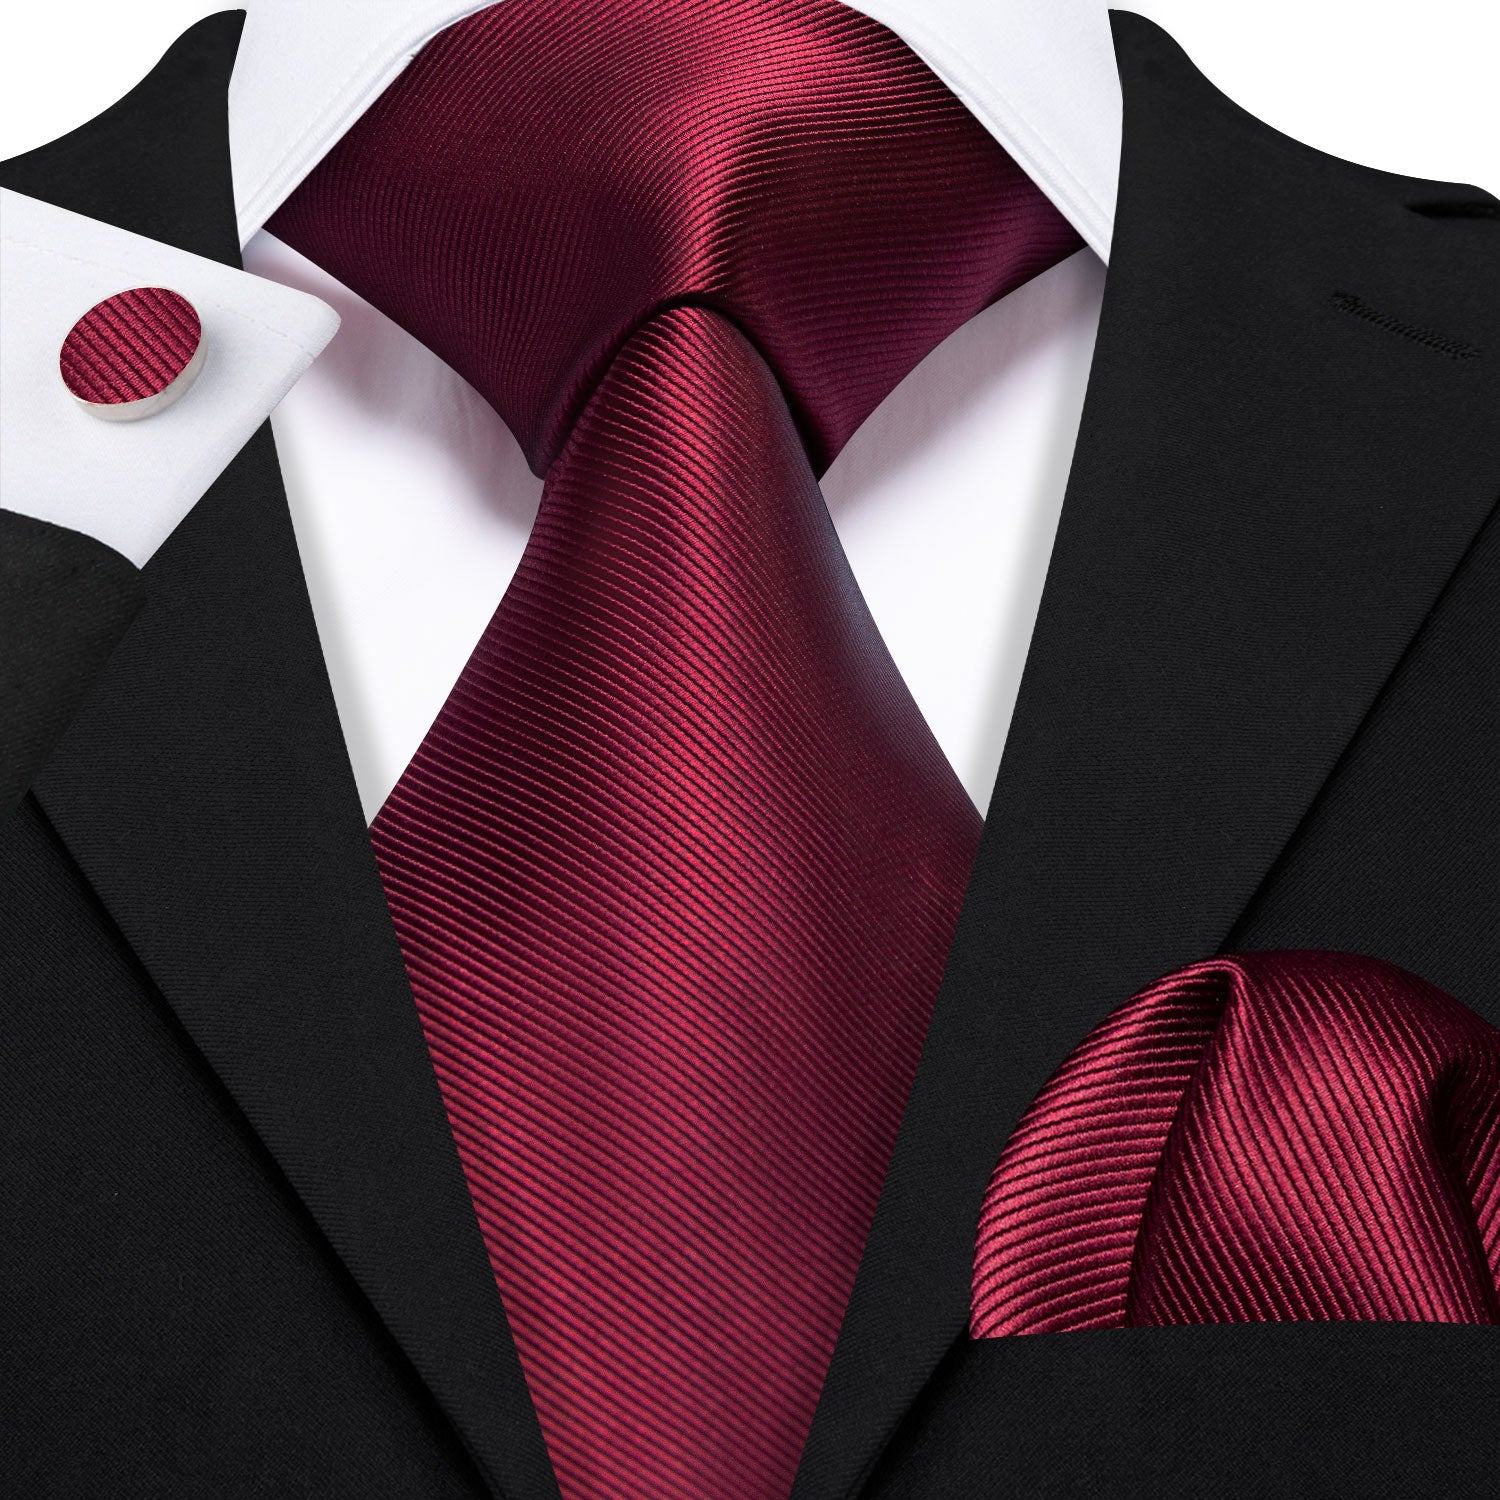 Burgundy Red Solid Tie Handkerchief Cufflinks Set